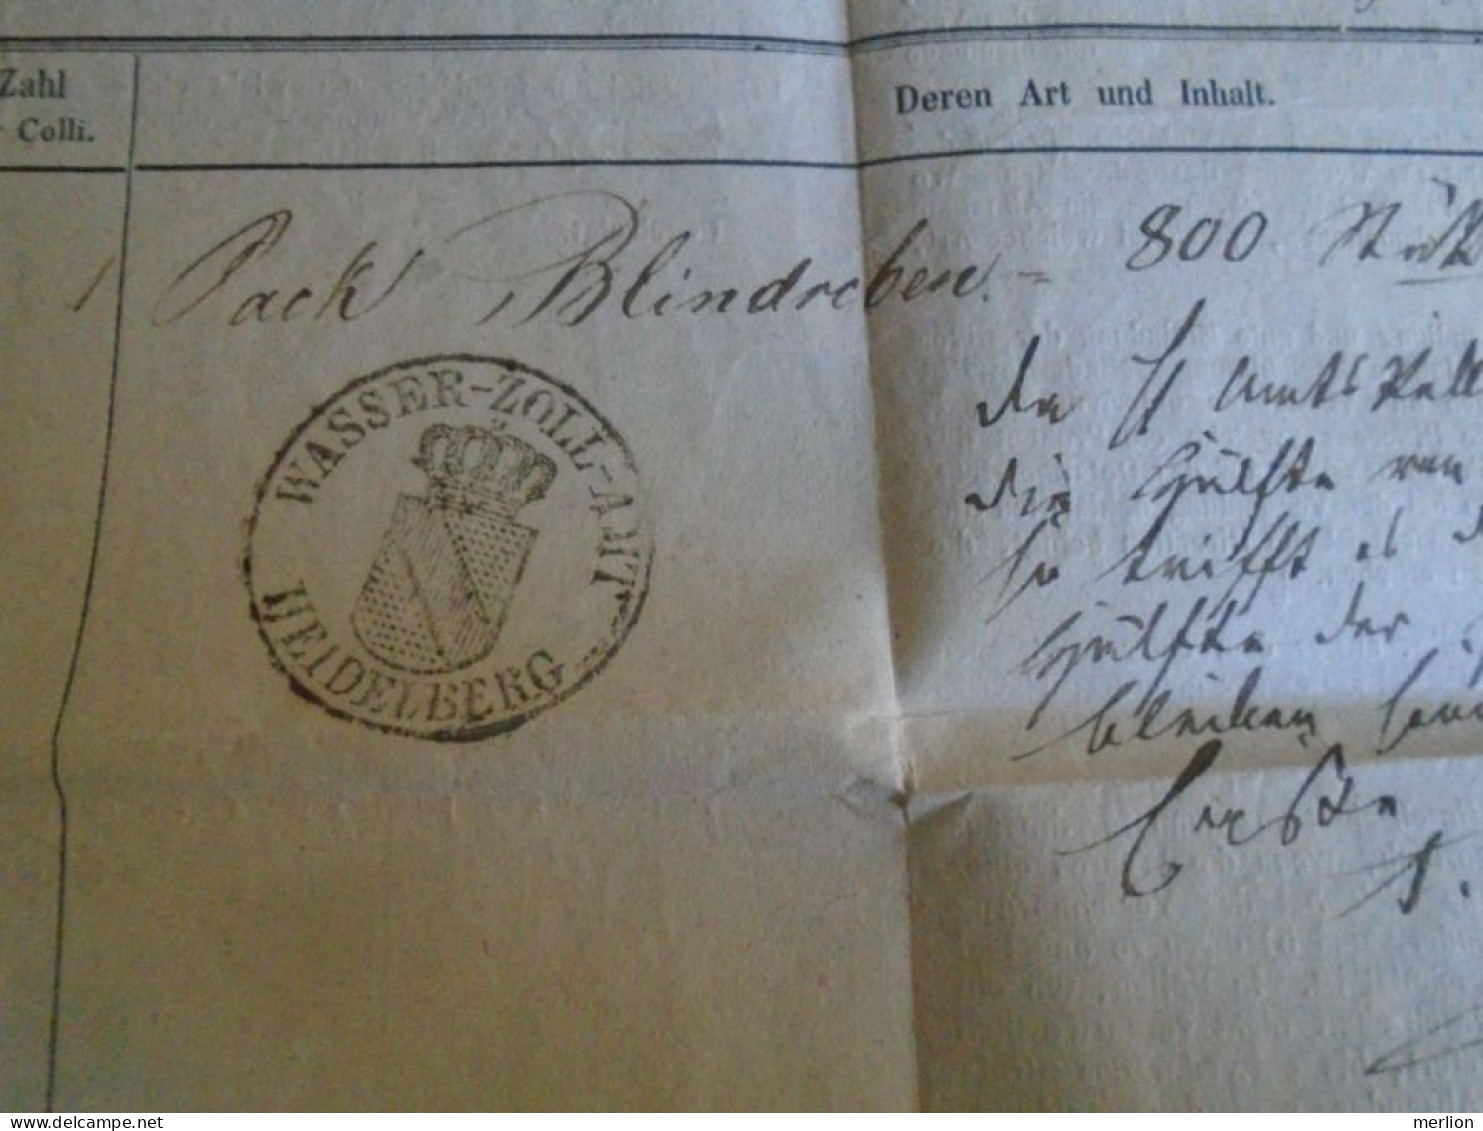 ZA488.13  Neckar Dampfschifffahrt  (Heilbronnen Gesellschaft) 1850 -  Wasser Zoll AMT Heidelberg  -Shipping Document - 1800 – 1899